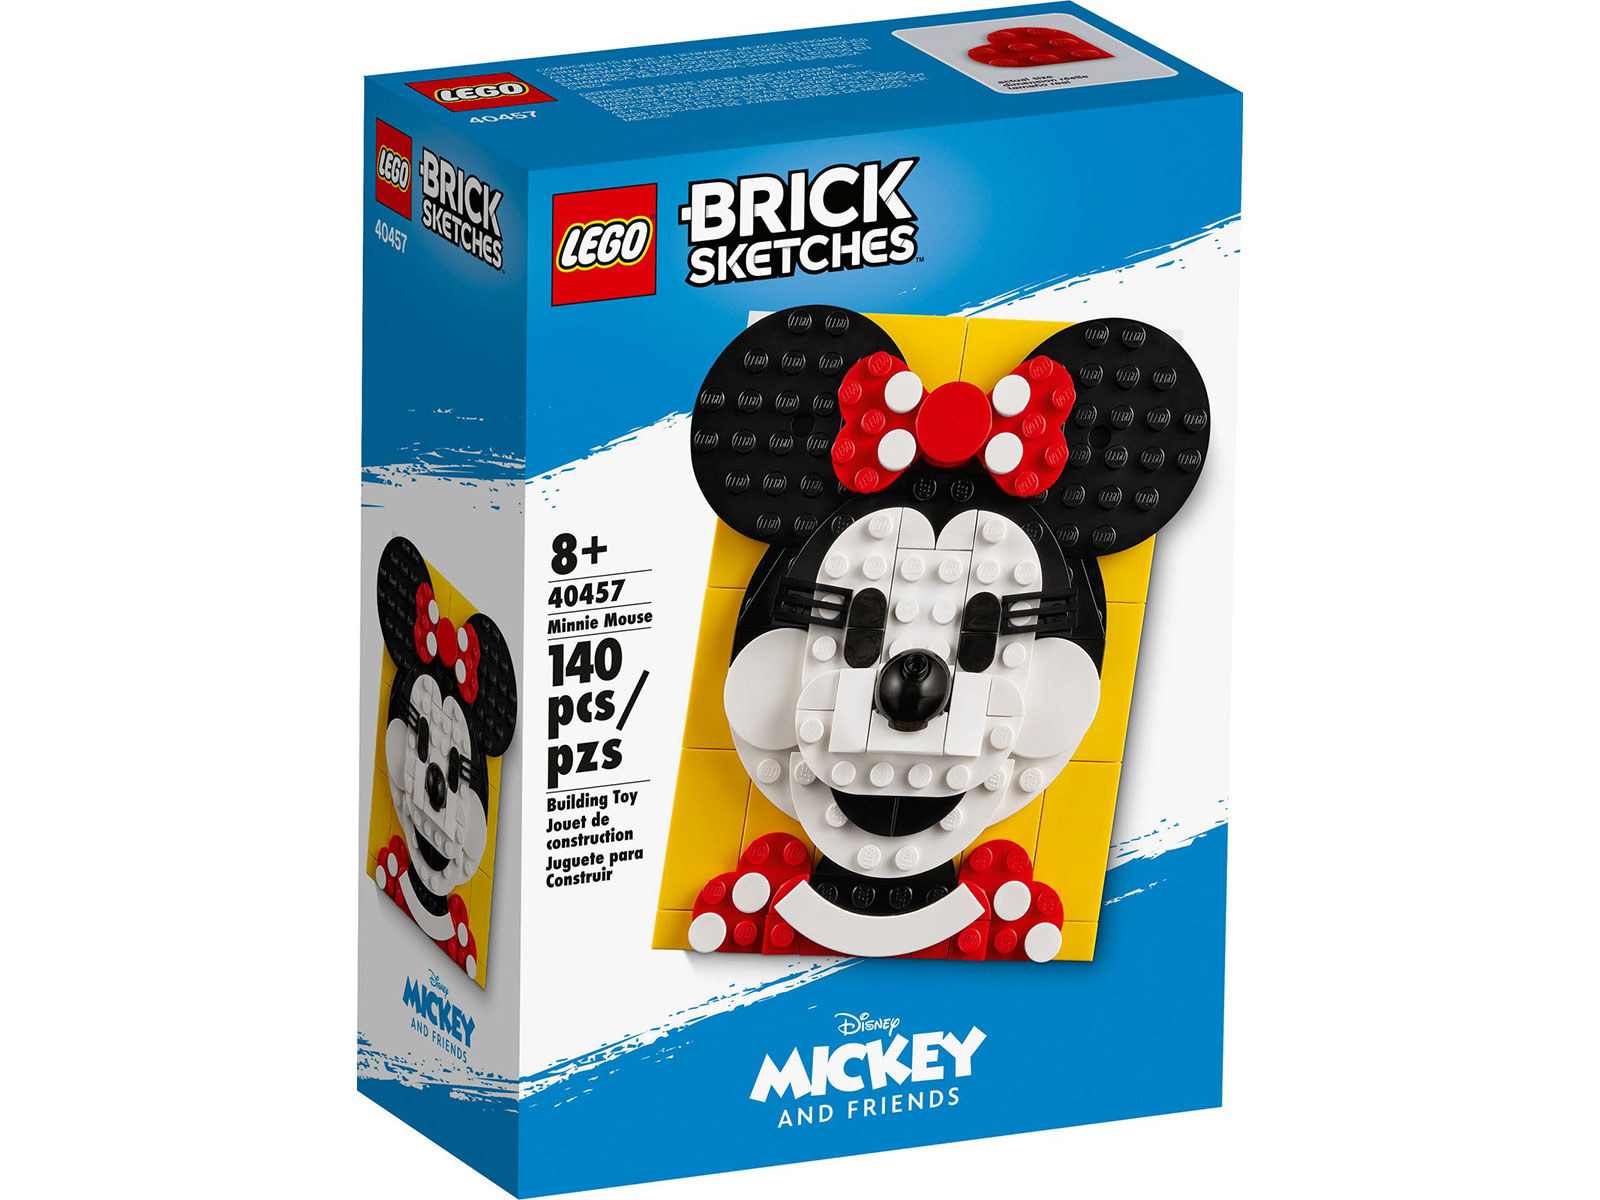 LEGO® Brick Sketches 40457 - Minnie Maus